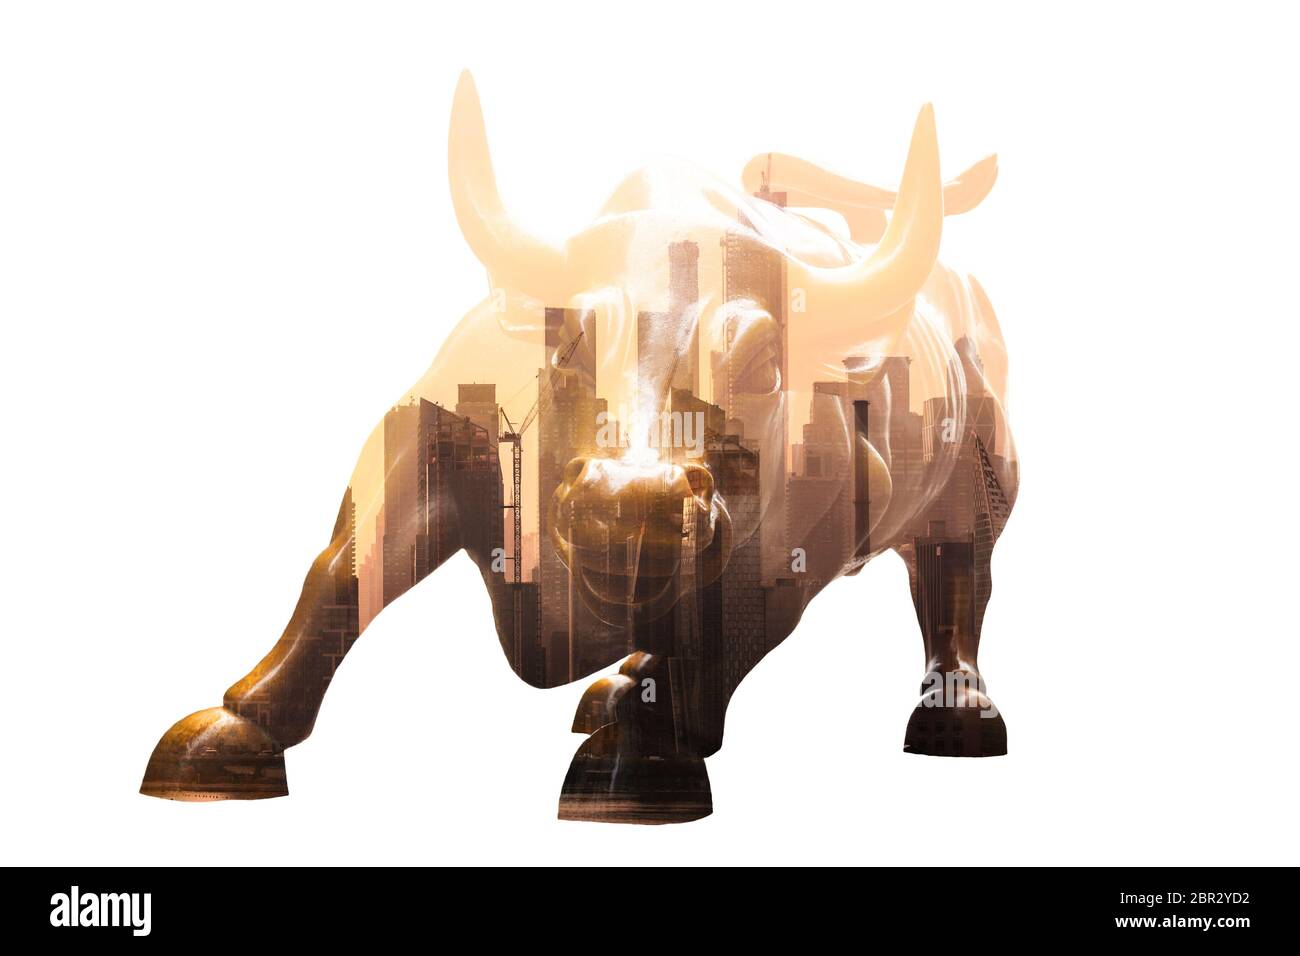 Ricarica Bull in Lower Manhattan su sfondo bianco. Business aziendale, finanza, mercato azionario e prosperità economica concettuel collage. Foto Stock